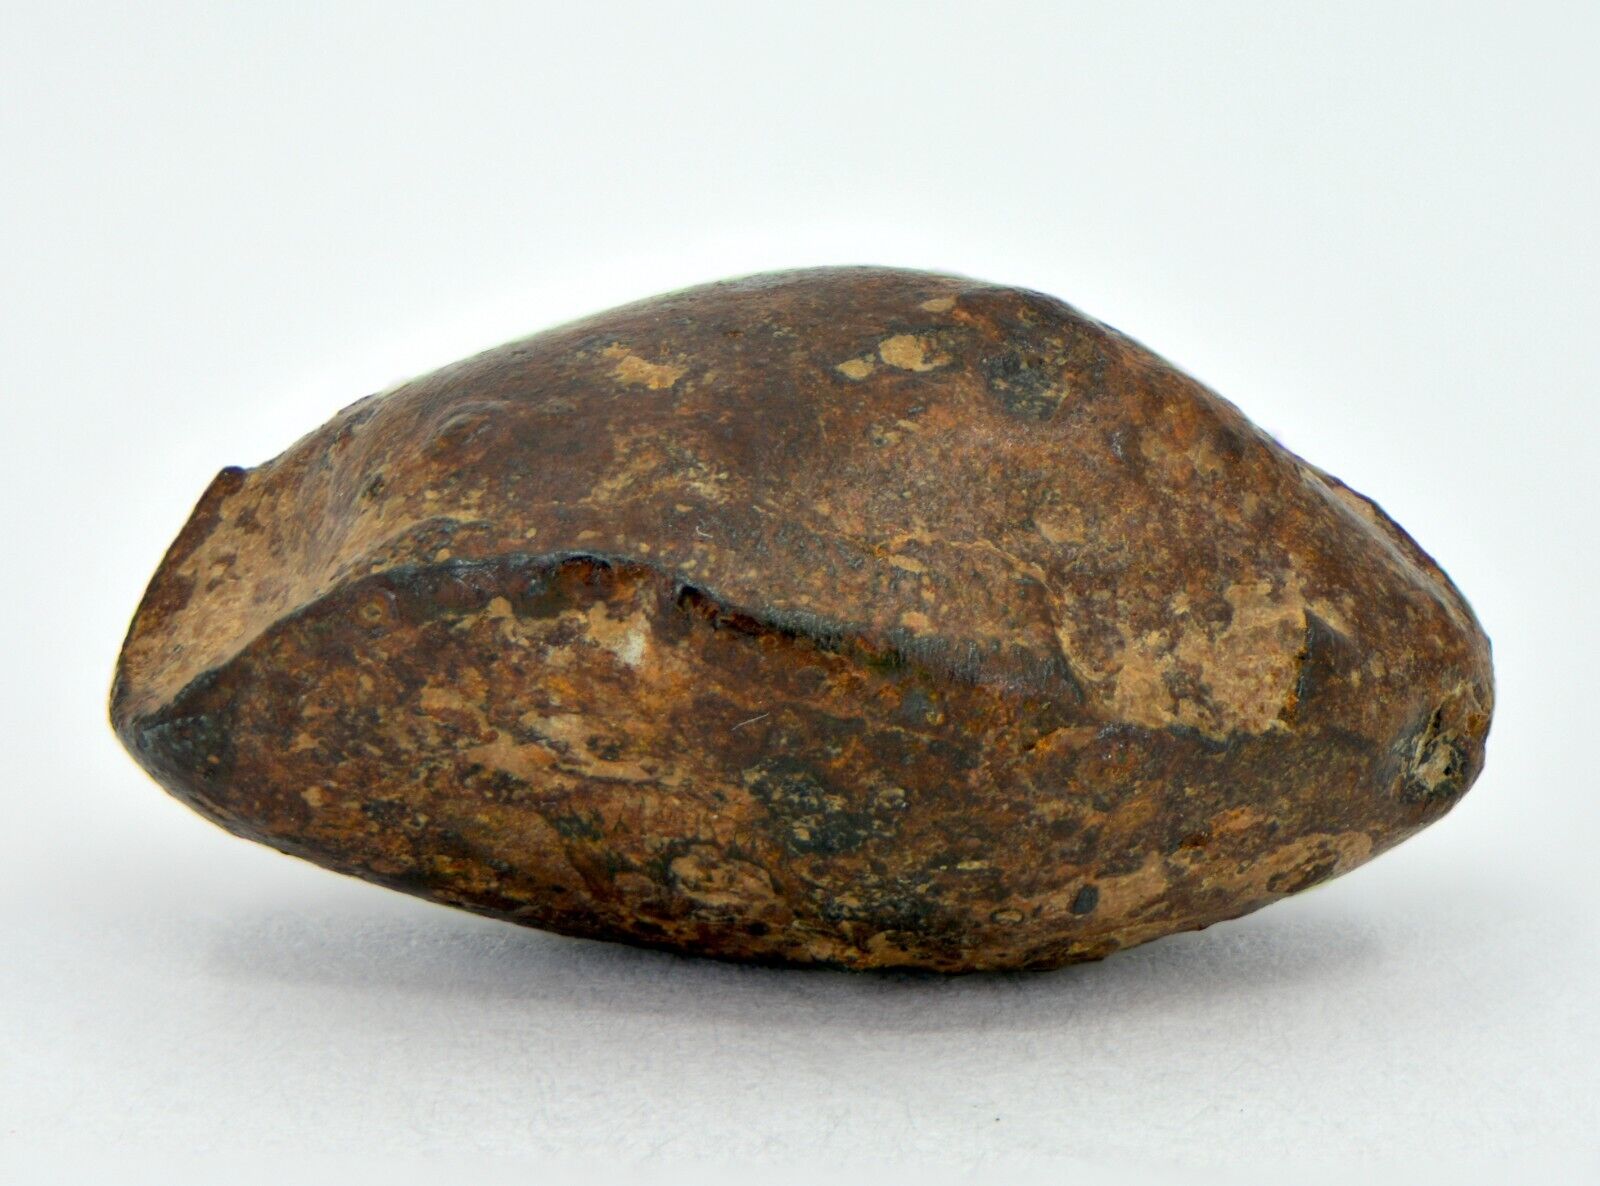 9.29 gram NWA 859 TAZA meteorite - Ungrouped Iron Meteorite I TOP METEORITE